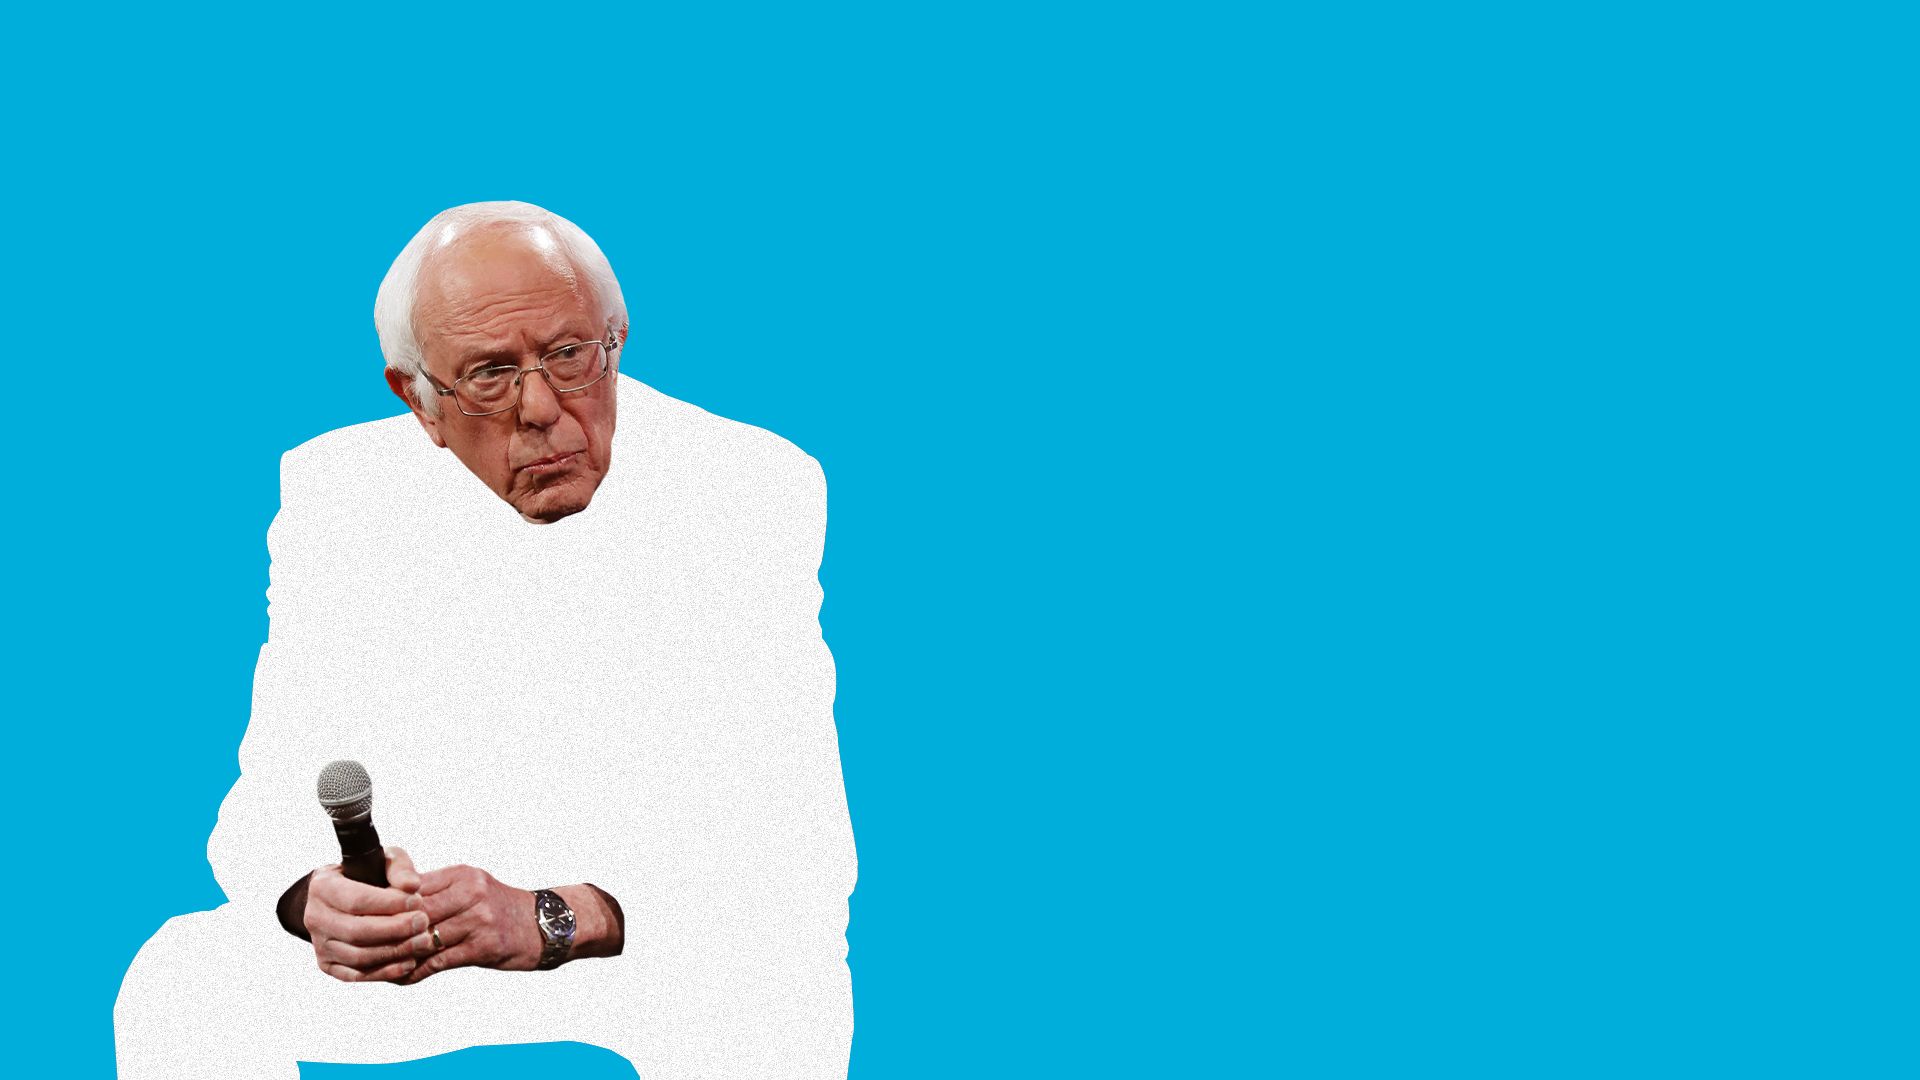 Photo illustration of Bernie Sanders.